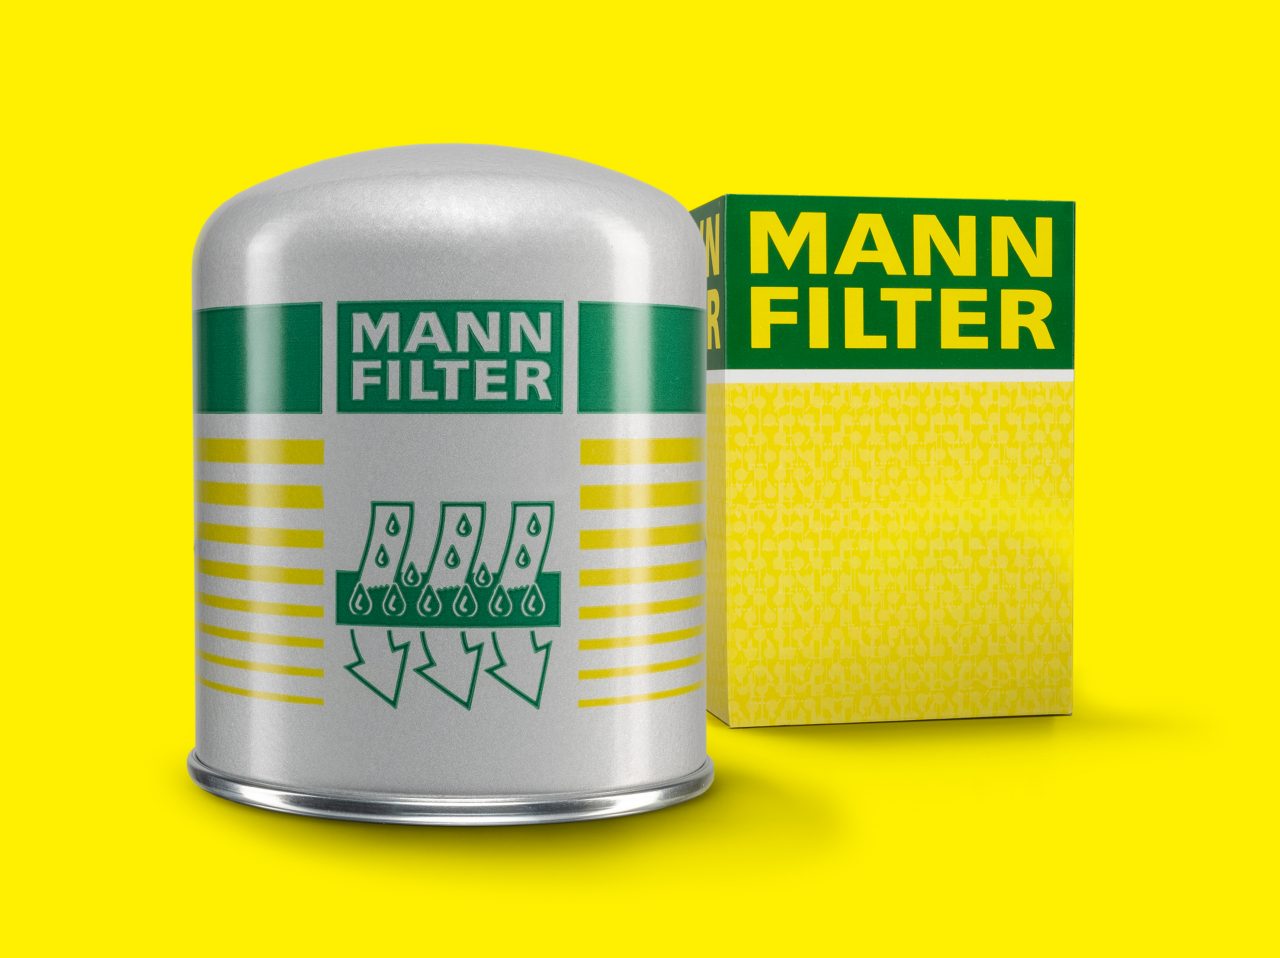 https://www.mann-filter.com/content/mann-filter/mann-filter-com/de-de/produkte/spezial-produkte/_jcr_content/root/container/teaser_content_grid/item0.coreimg.jpeg/1682424264312/mann-filter-trockenmittelbox-tb13941.jpeg